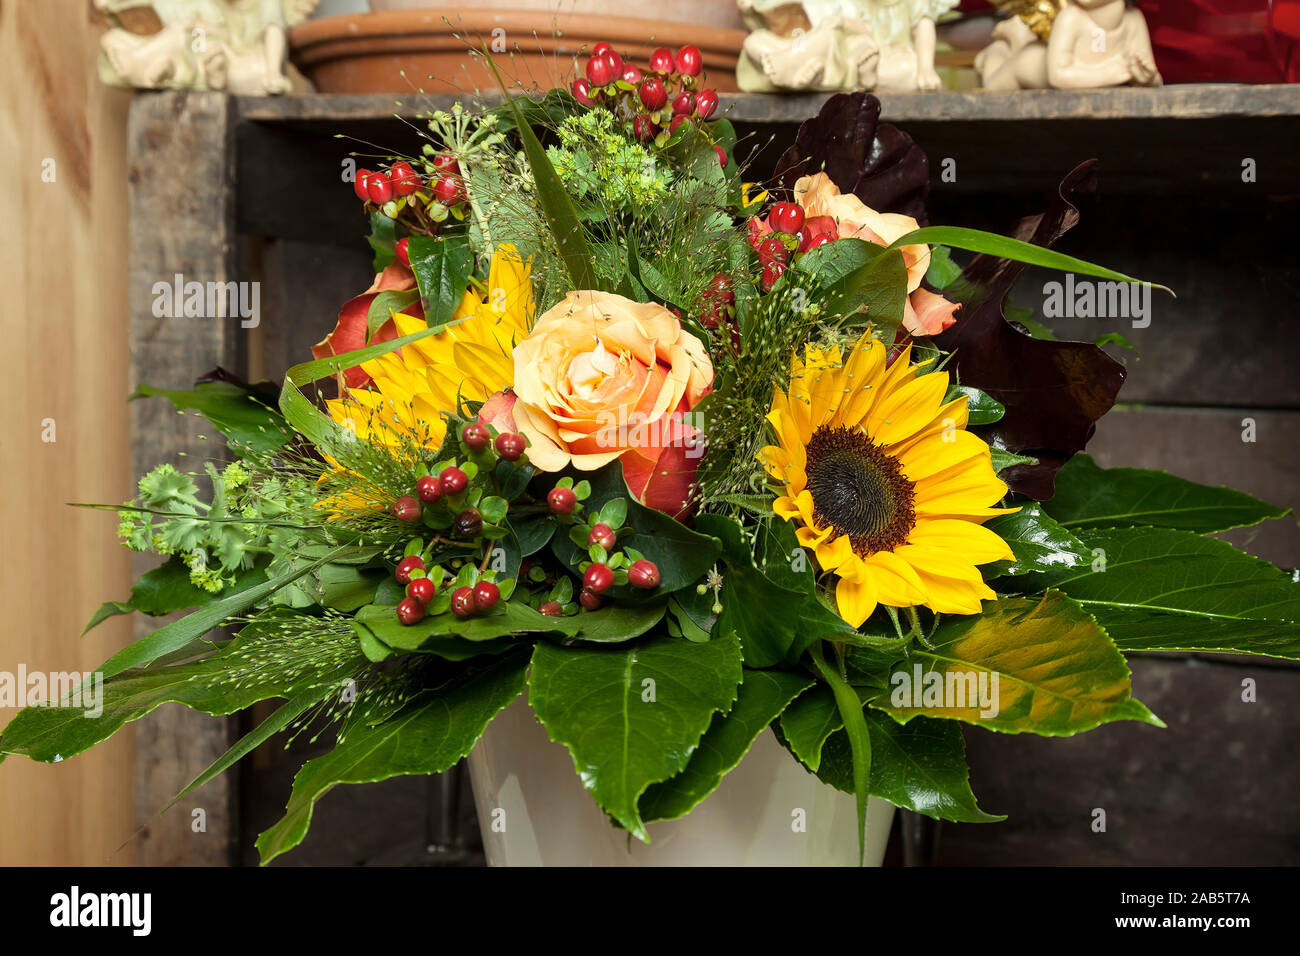 Ein wunderschoen zusammengestelltes Blumenbouquet Stock Photo